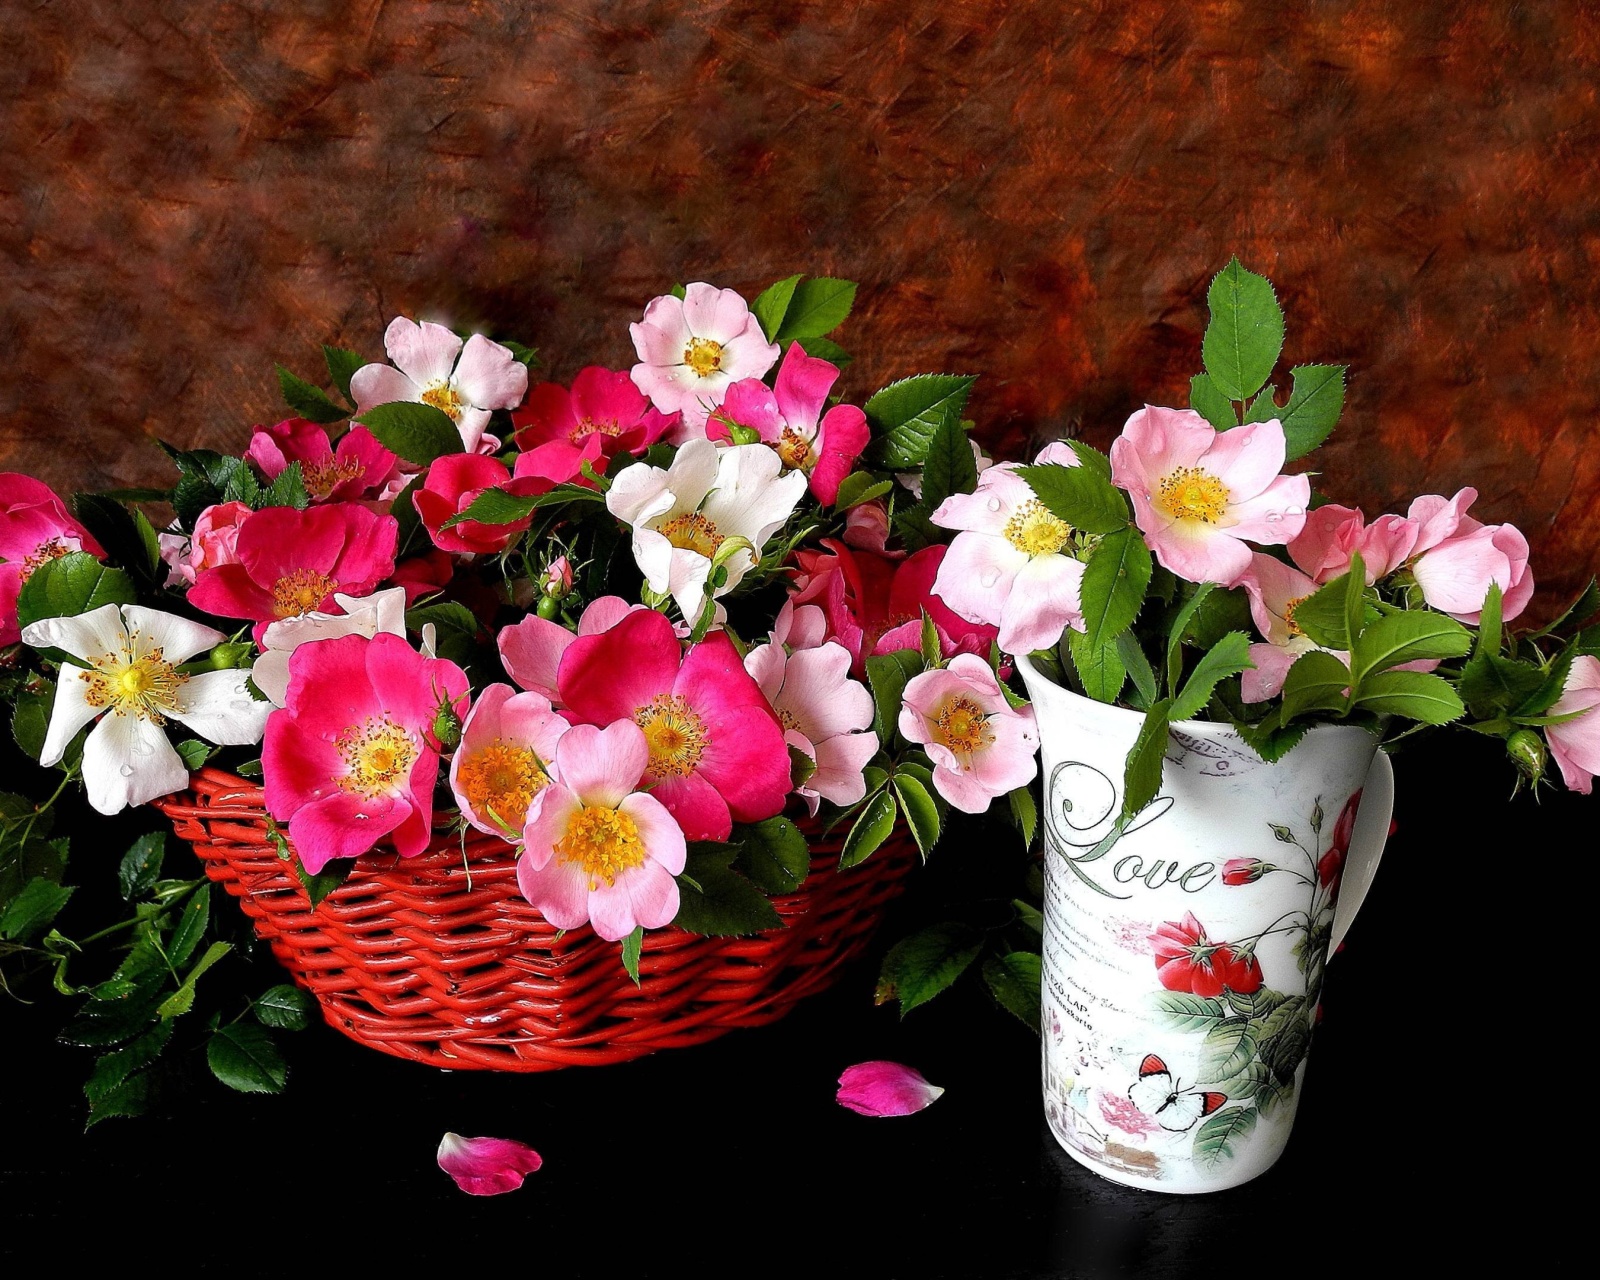 Sweetheart flowers wallpaper 1600x1280